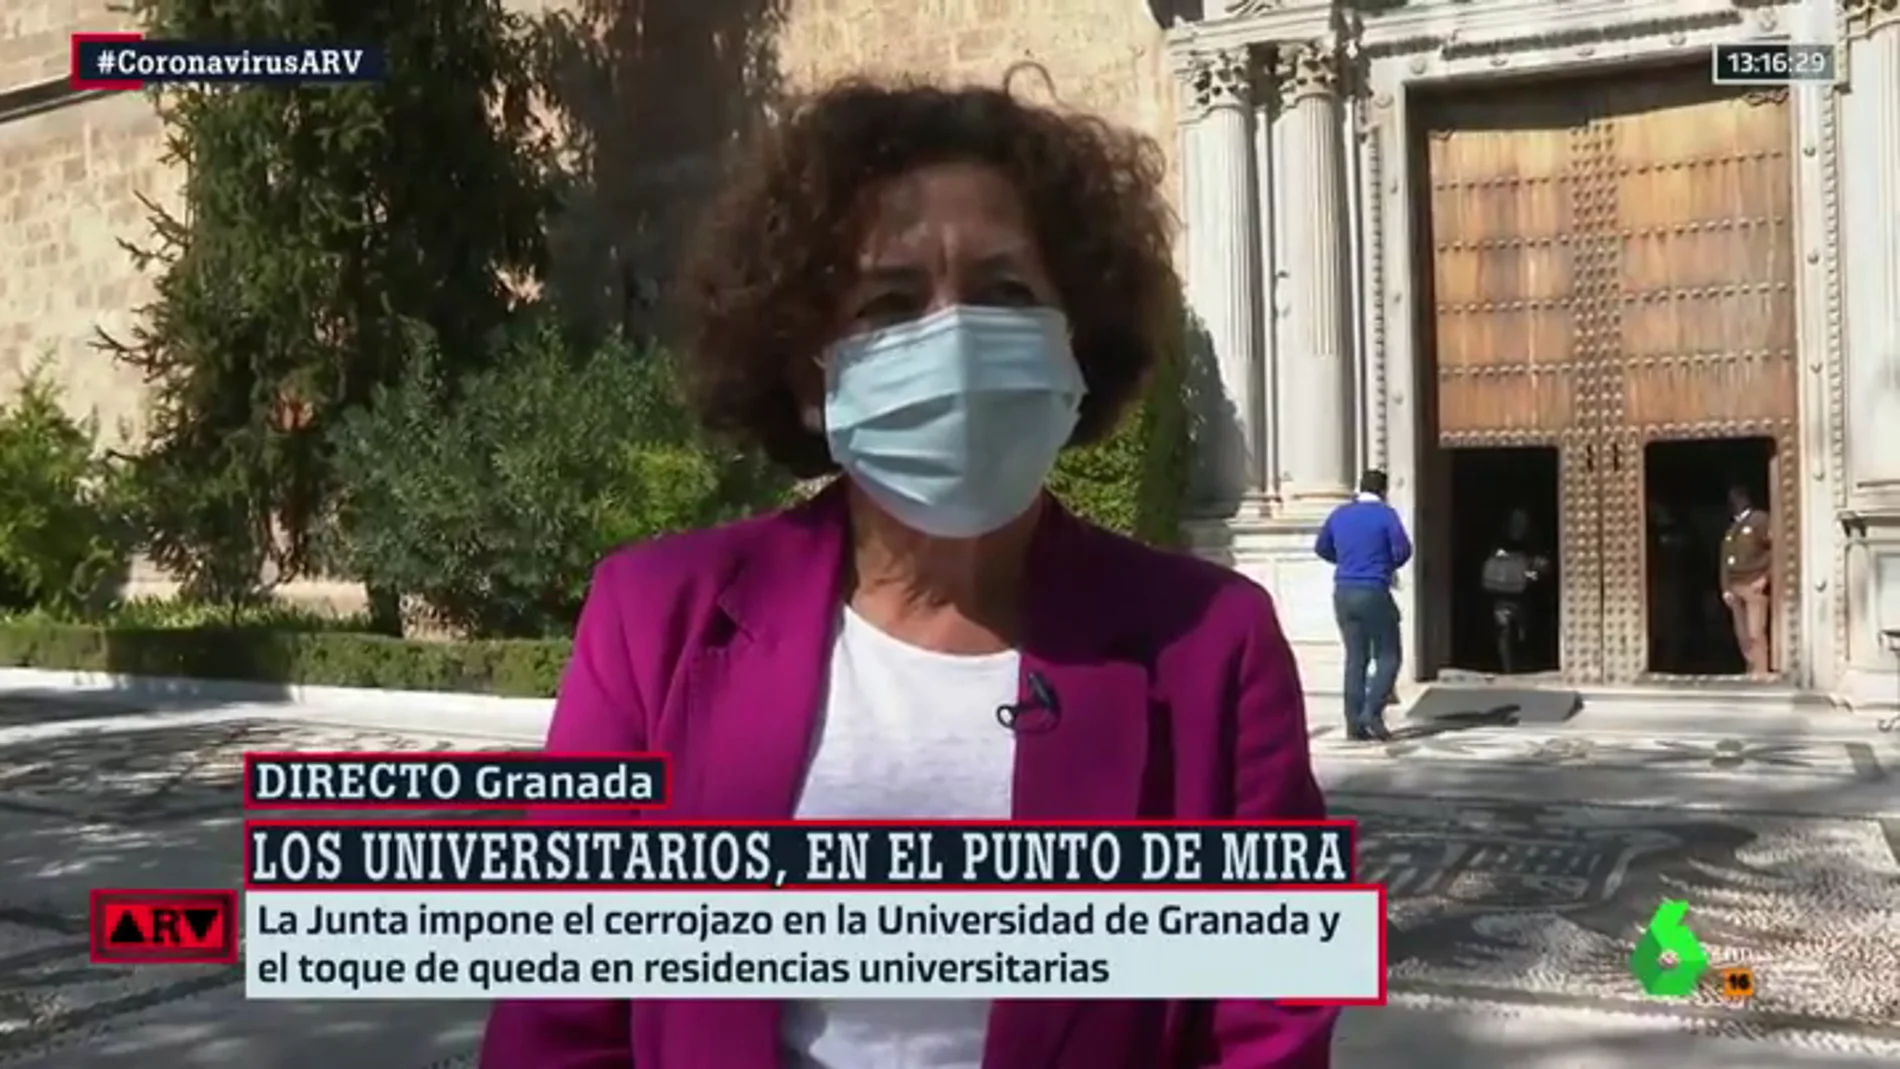 La rectora de la Universidad de Granada considera "un error" la decisión de la Junta: "La Universidad no tiene ningún brote"